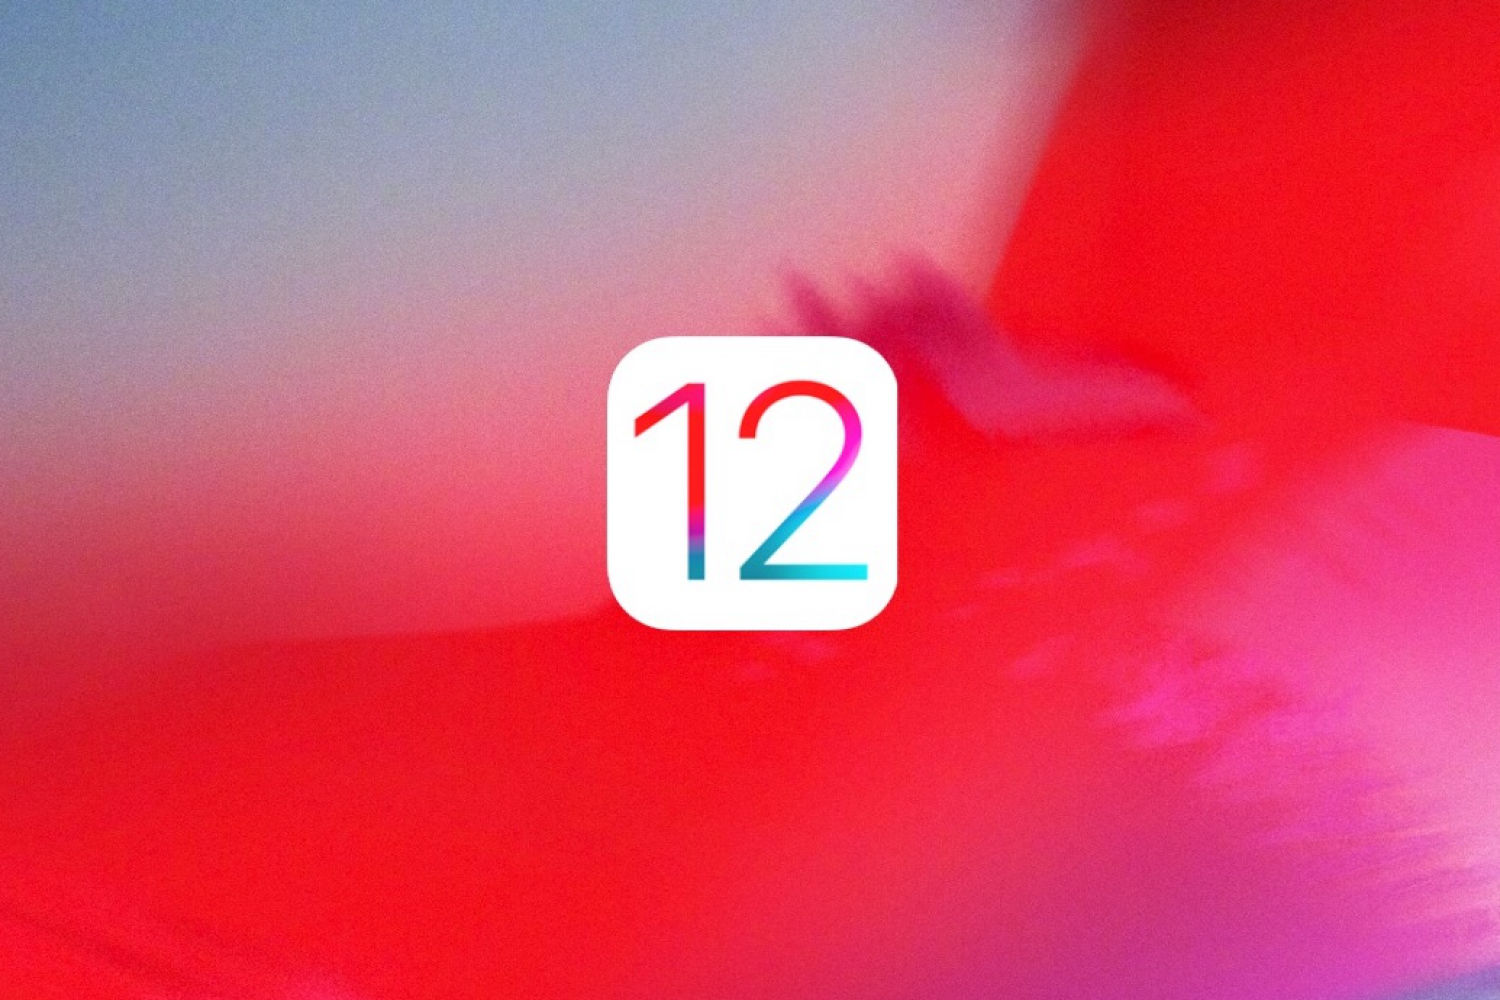 除发布会上介绍的，iOS 12还有这些细节变化